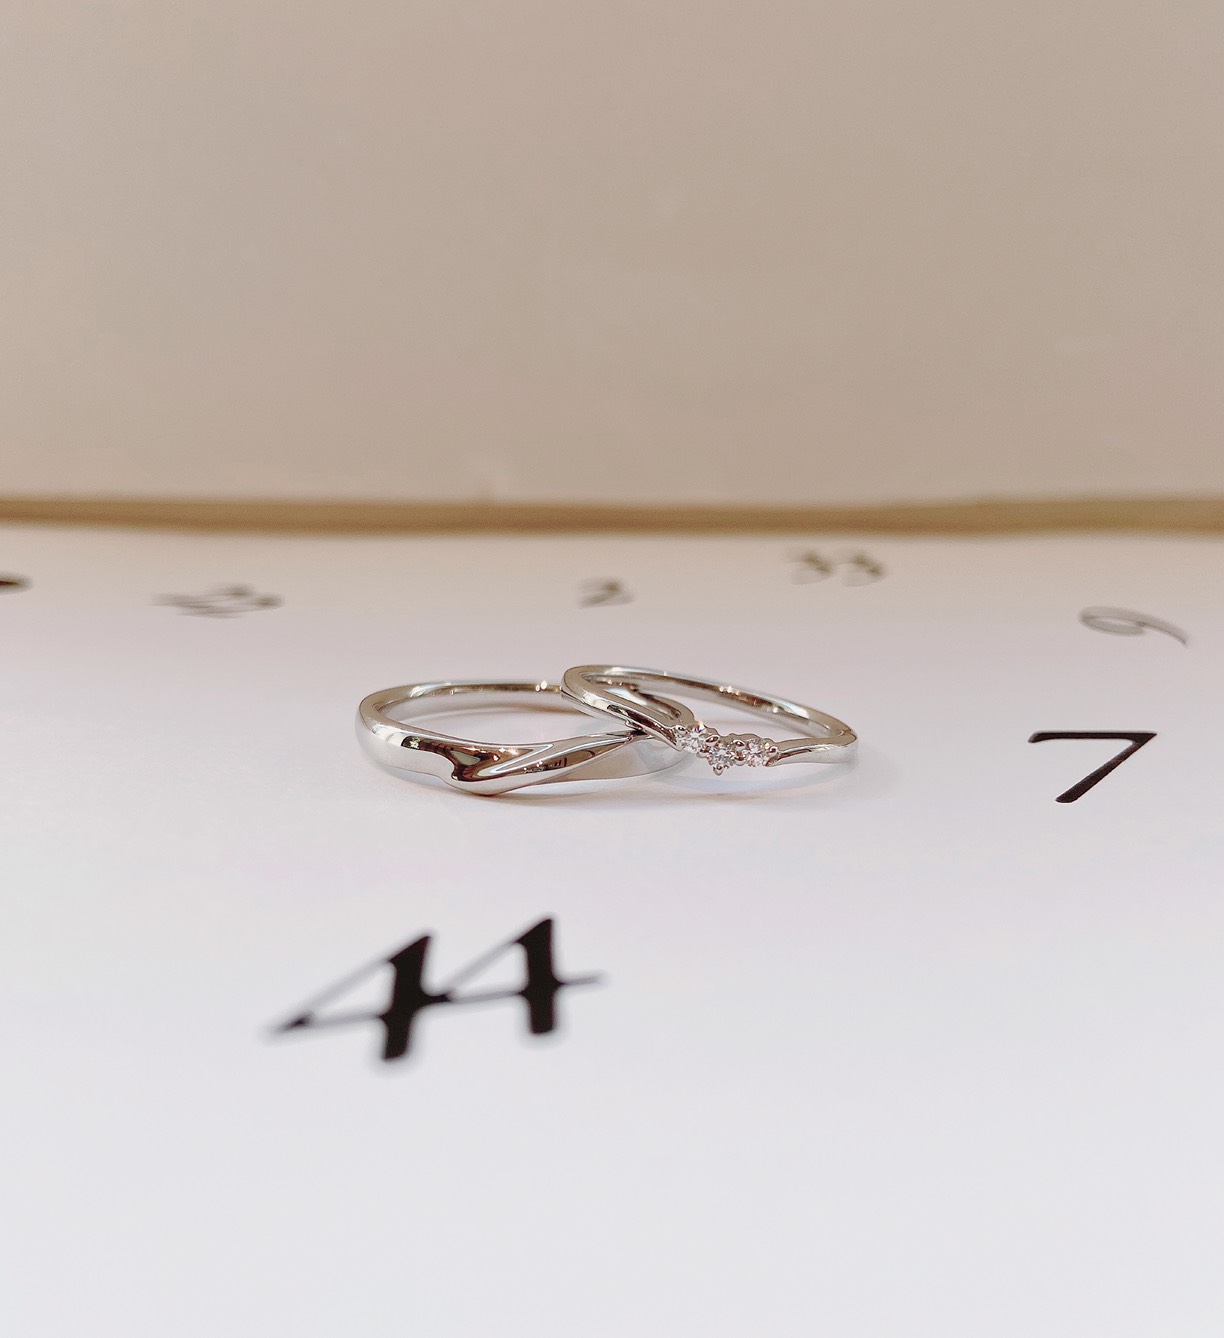 2本で10万円で帰る結婚指輪アンジーはブローチ新潟の限定商品